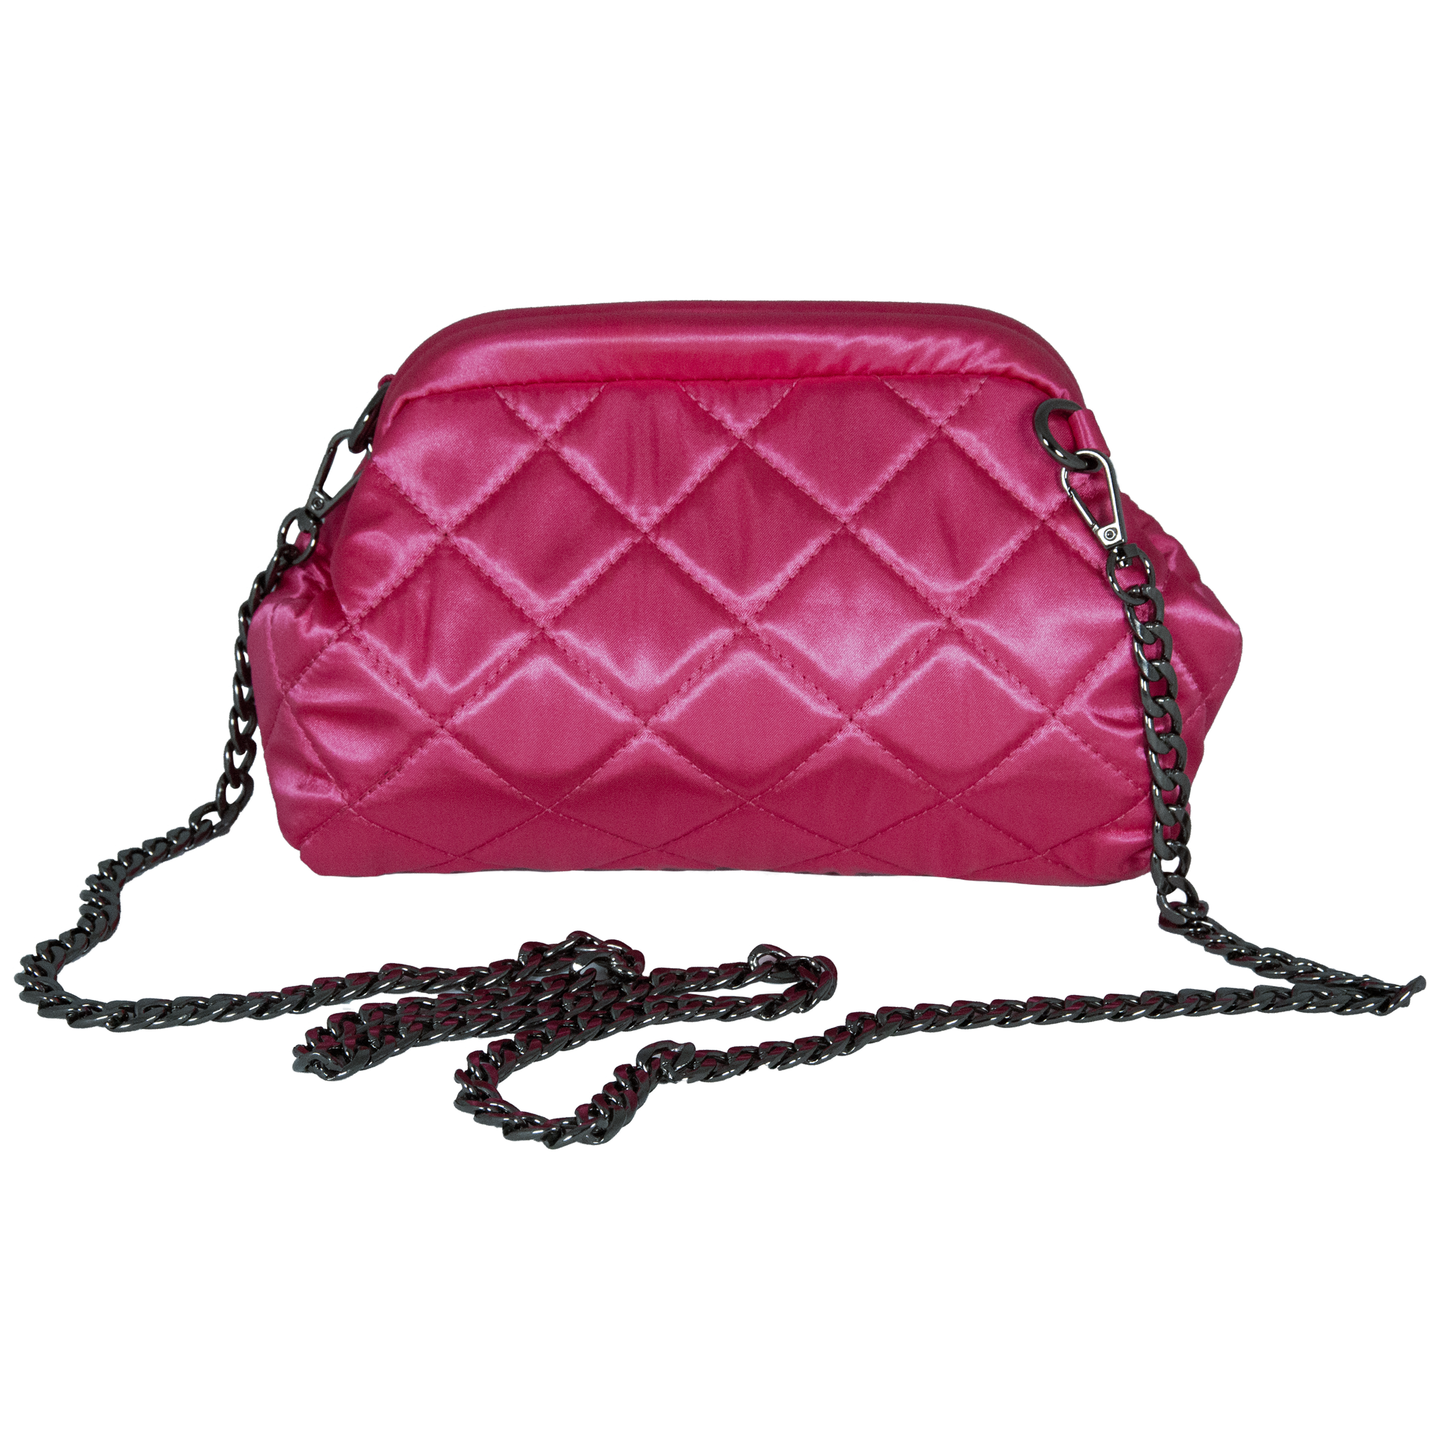 FNNR Women's Chain Handbag - Fuscia